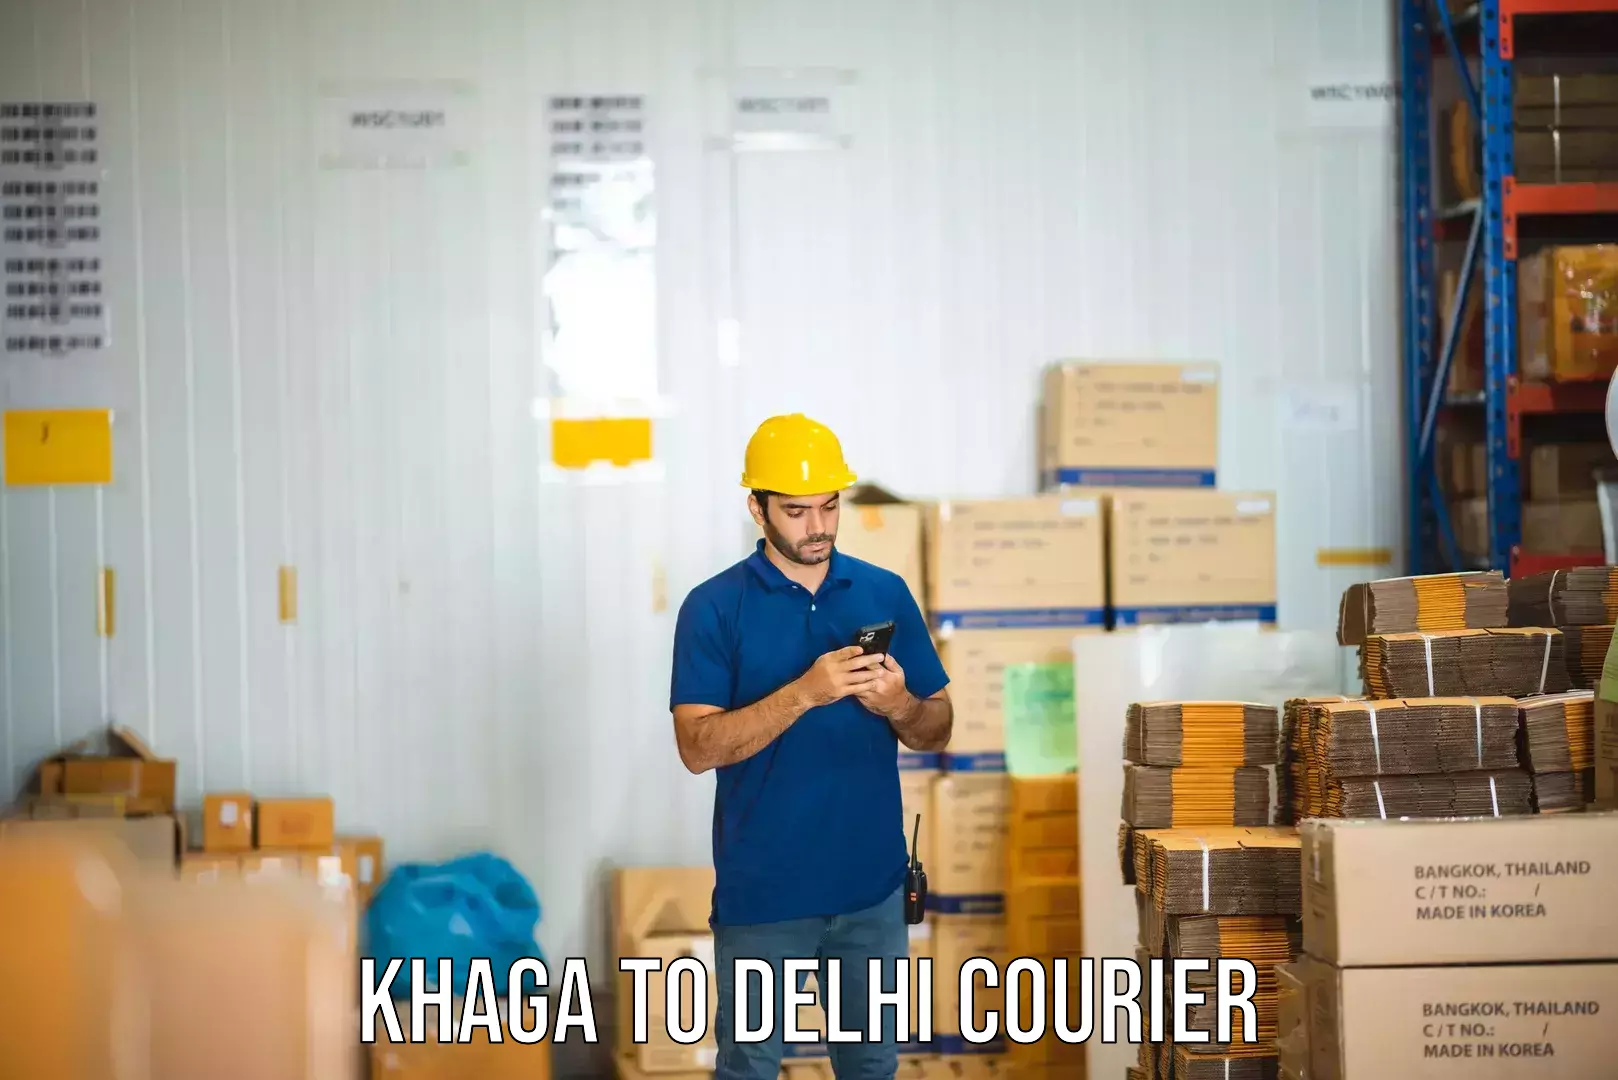 Affordable parcel rates Khaga to IIT Delhi